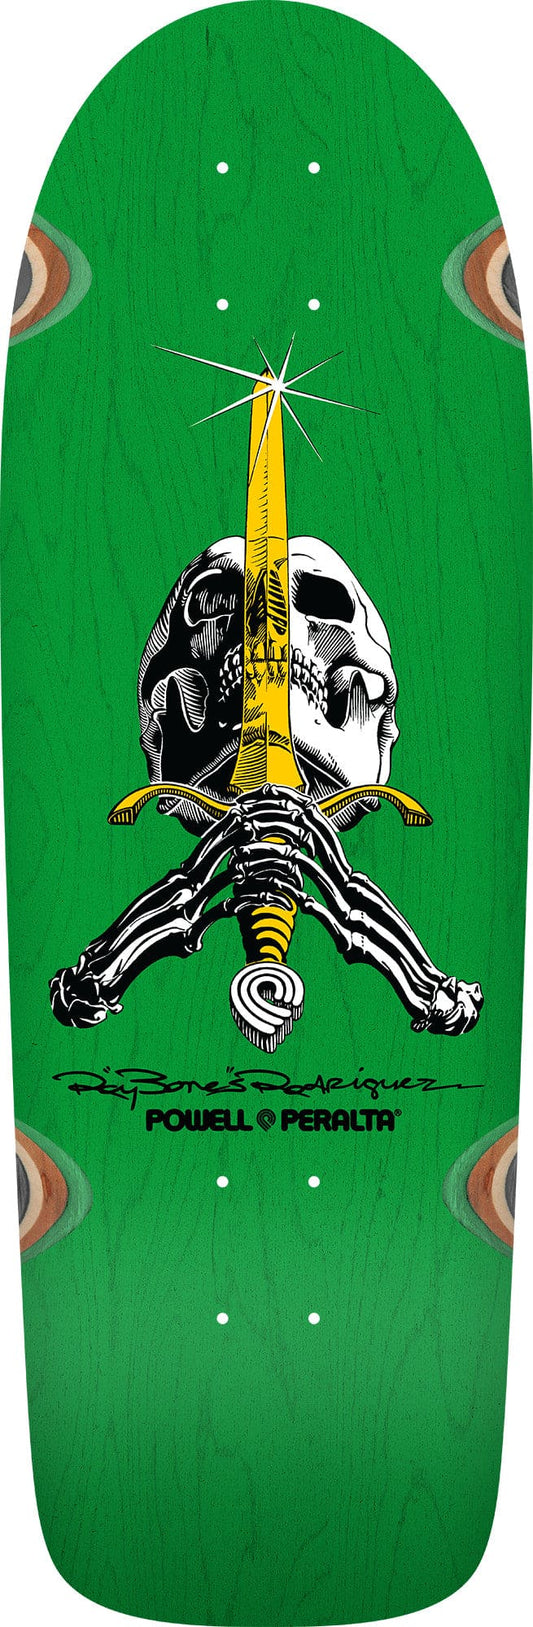 Powell Peralta | 10" OG Ray Rodriguez Skull & Sword Reissue Deck - Green Stain